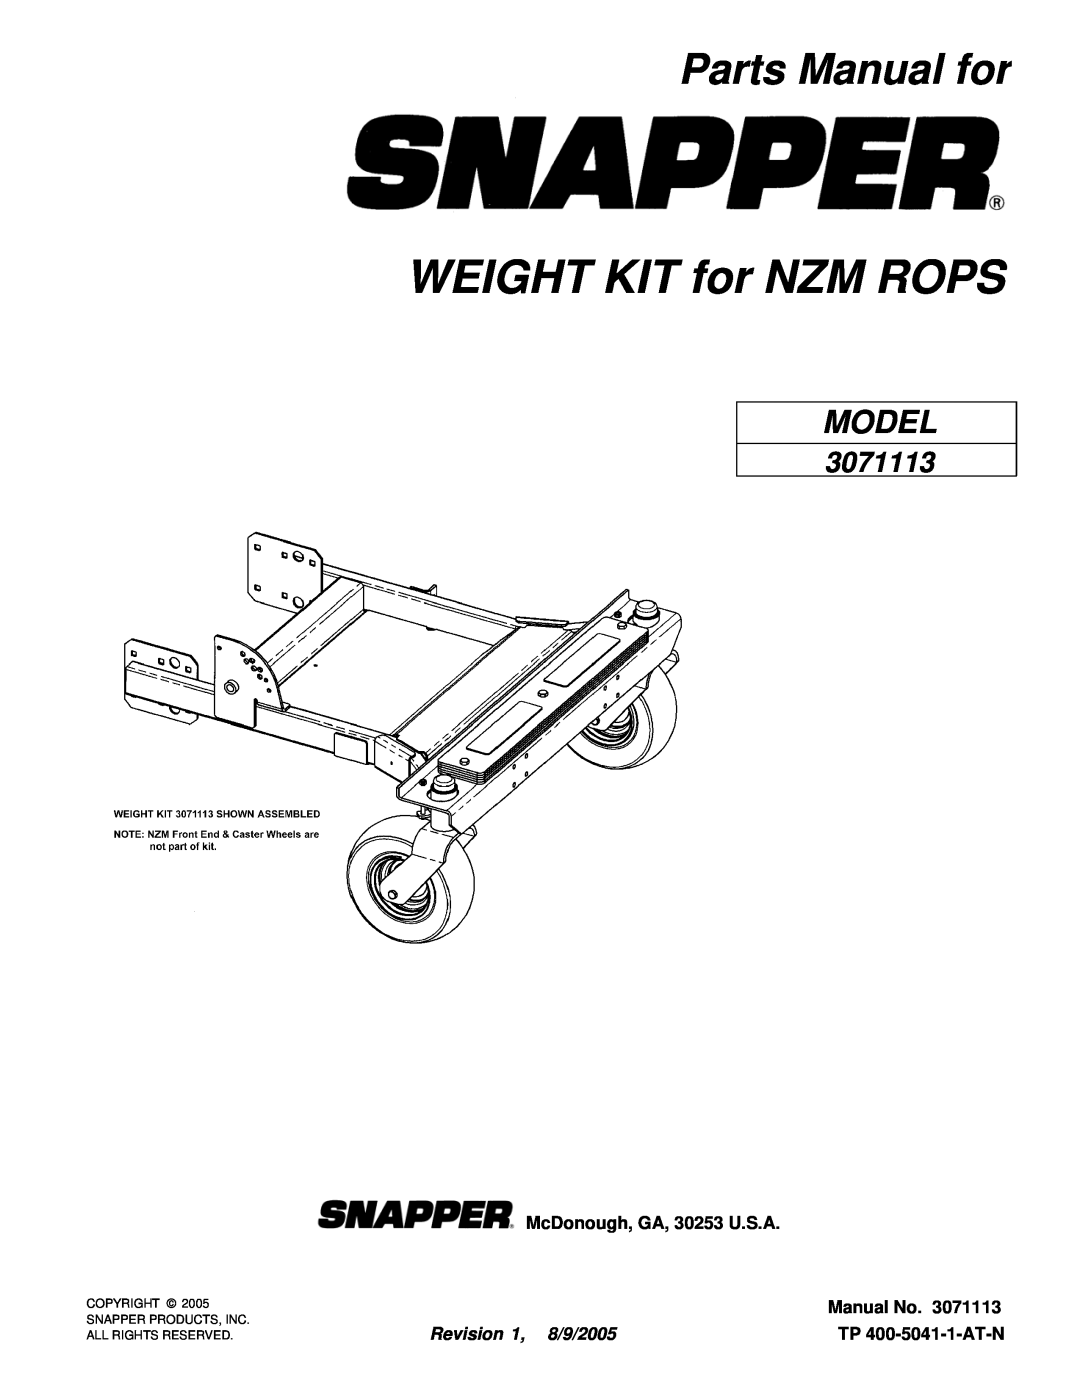 Snapper 3071113 manual Parts Manual for, McDonough, GA, 30253 U.S.A, Manual No, Revision 1, 8/9/2005, TP 400-5041-1-AT-N 